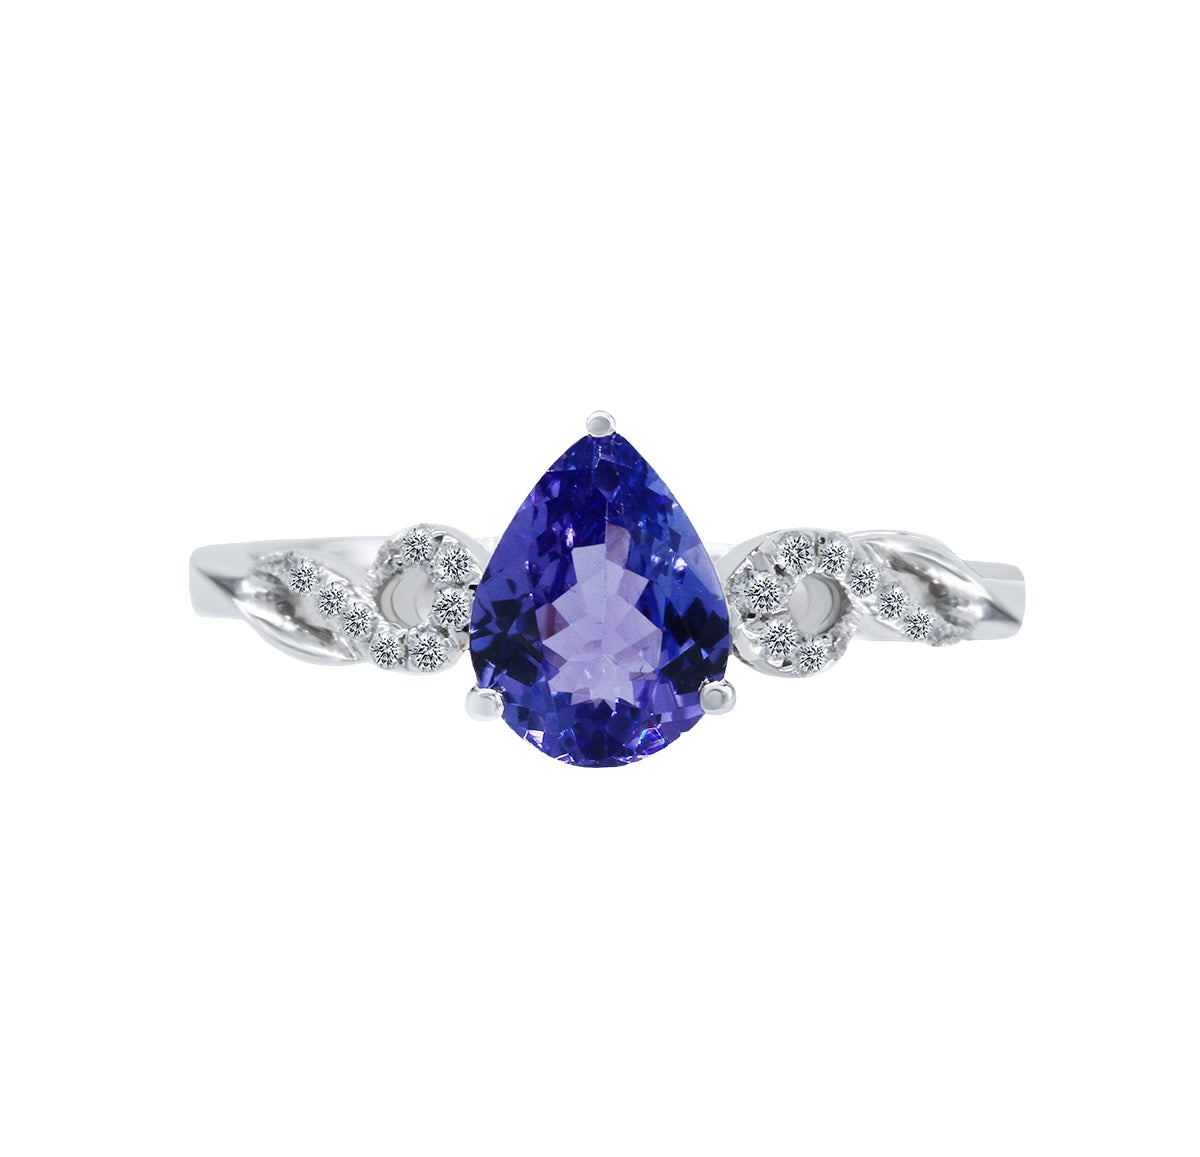 經典三爪梨形紫藍坦桑石與鑽石戒指 - WILLS JEWELLERY